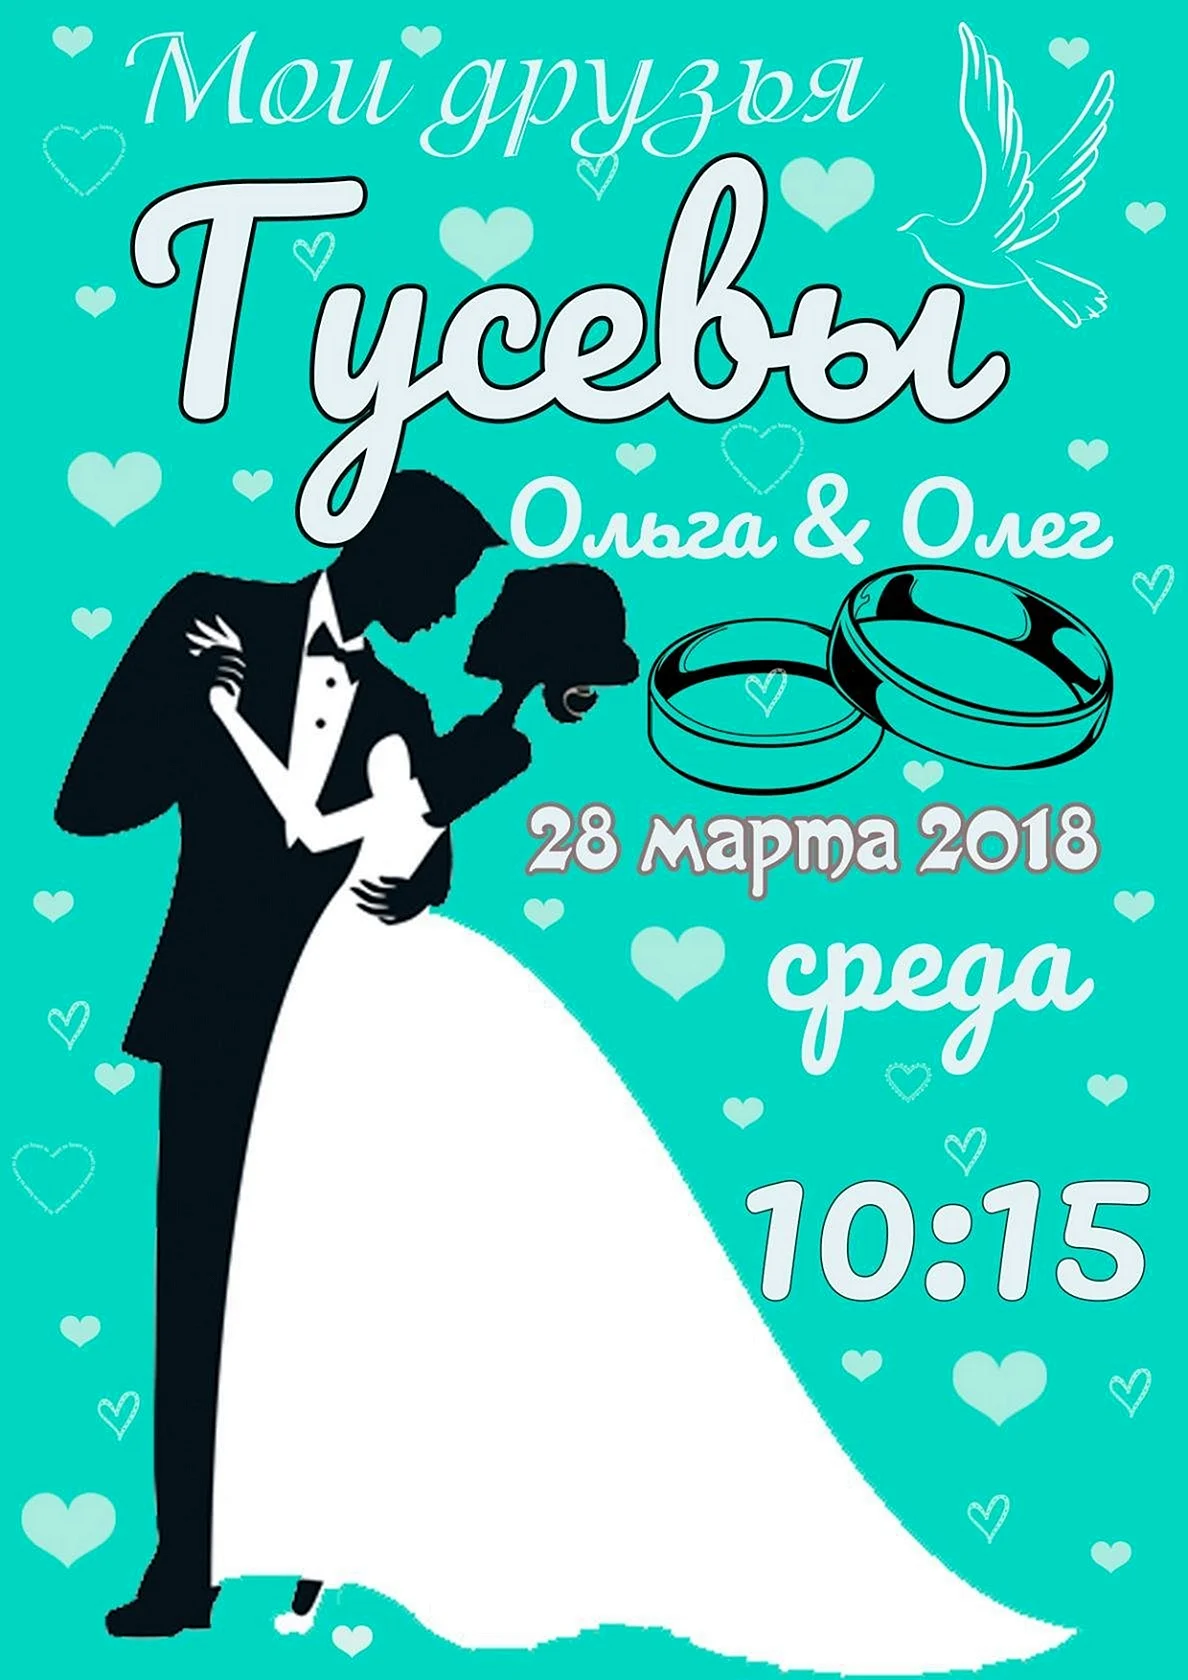 Постер на свадьбу